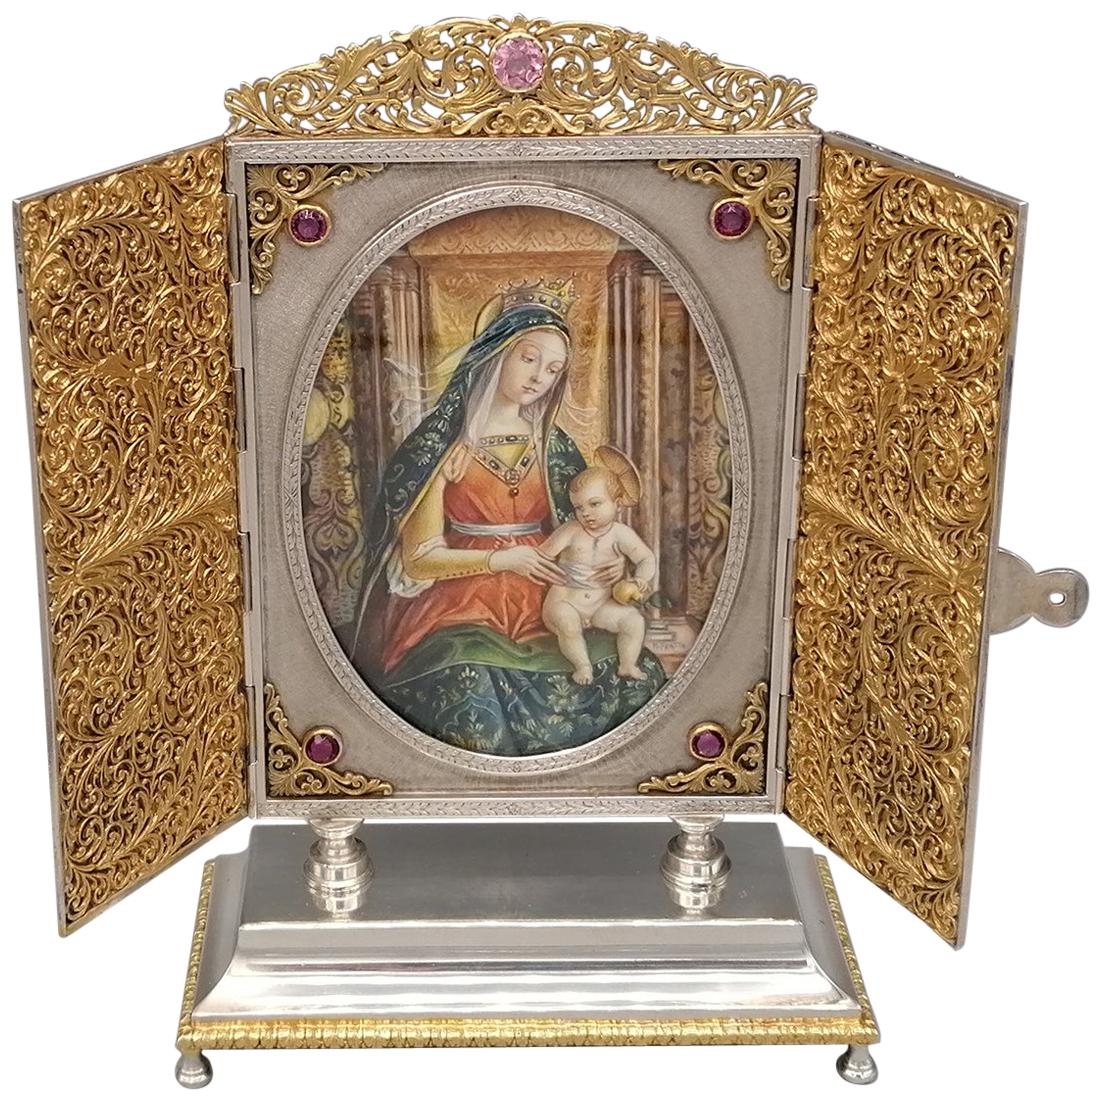 Portal italien du 20e siècle en argent massif du 20e siècle « Virgin Lady and Child Enthroned » (Véritable femme et enfant intronisé)